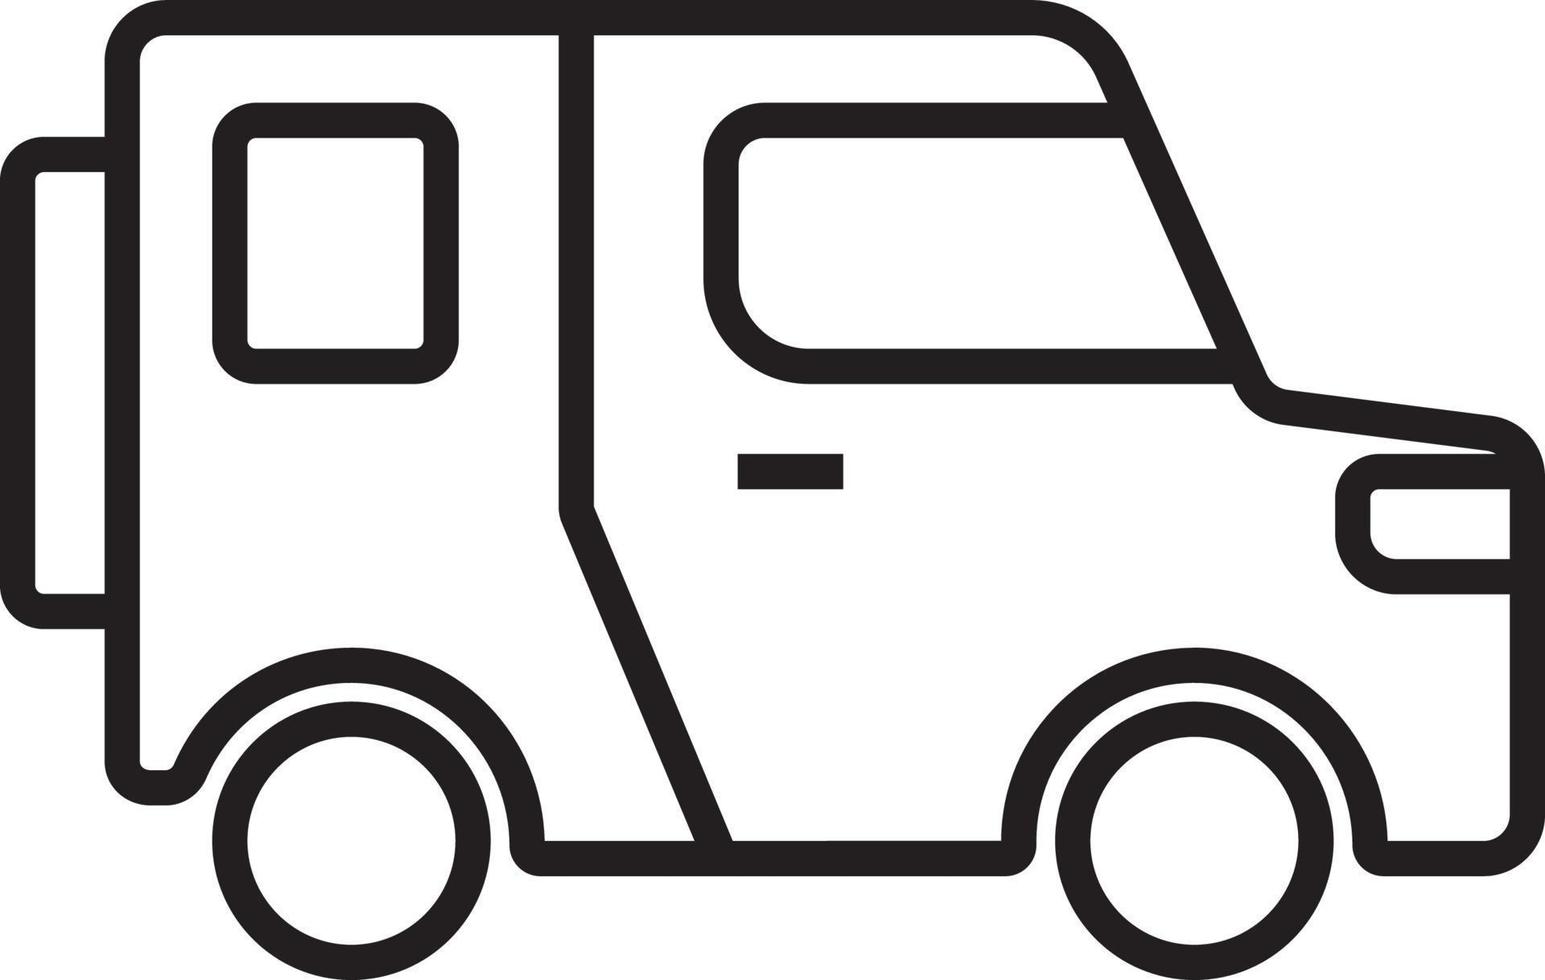 icono de transporte en jeep iconos de personas con estilo de contorno negro. vehículo, símbolo, transporte, línea, contorno, estación, viaje, automóvil, editable, pictograma, aislado, plano. ilustración vectorial vector